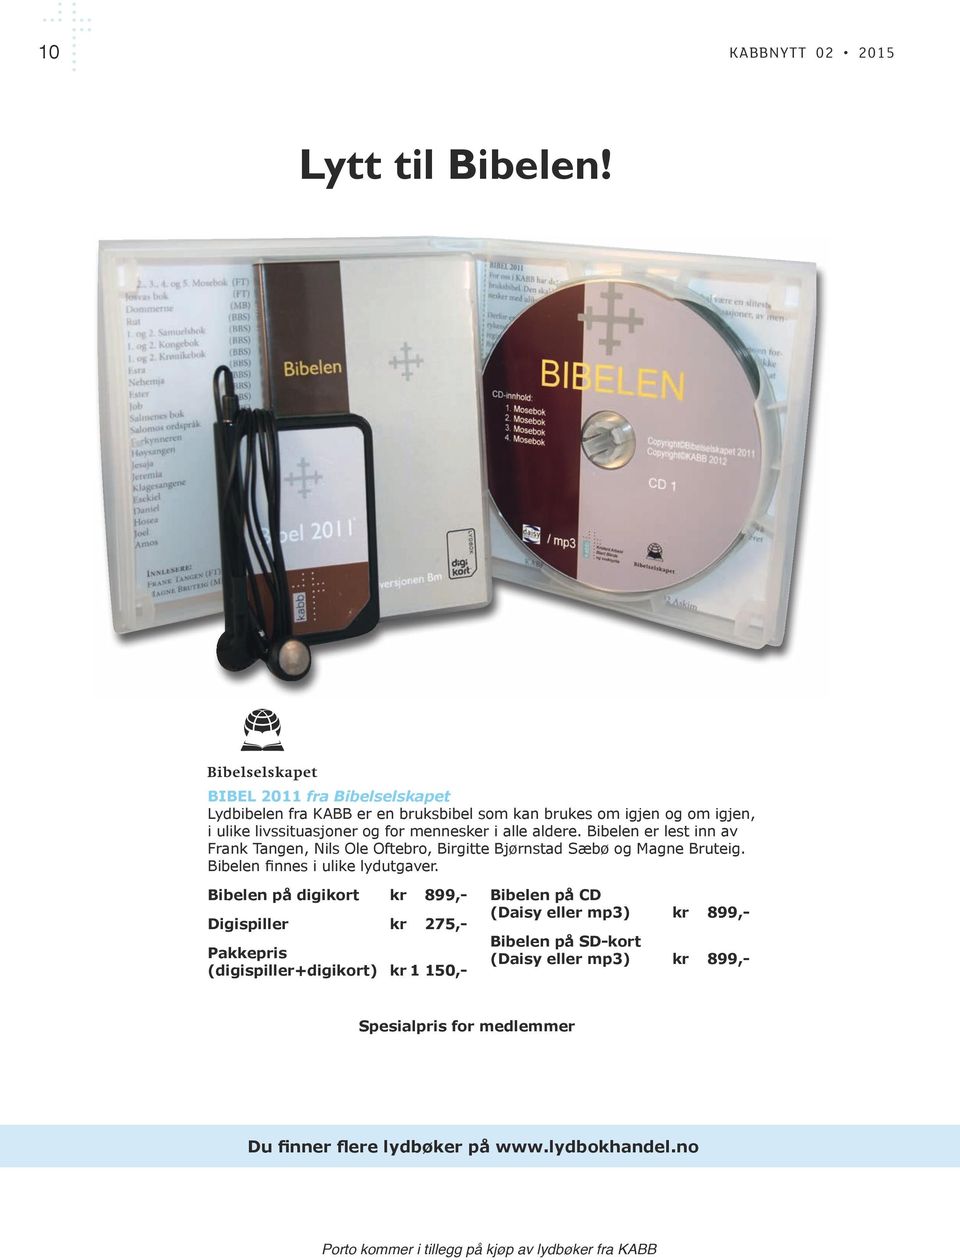 Bibelen er lest inn av Frank Tangen, Nils Ole Oftebro, Birgitte Bjørnstad Sæbø og Magne Bruteig. Bibelen finnes i ulike lydutgaver.